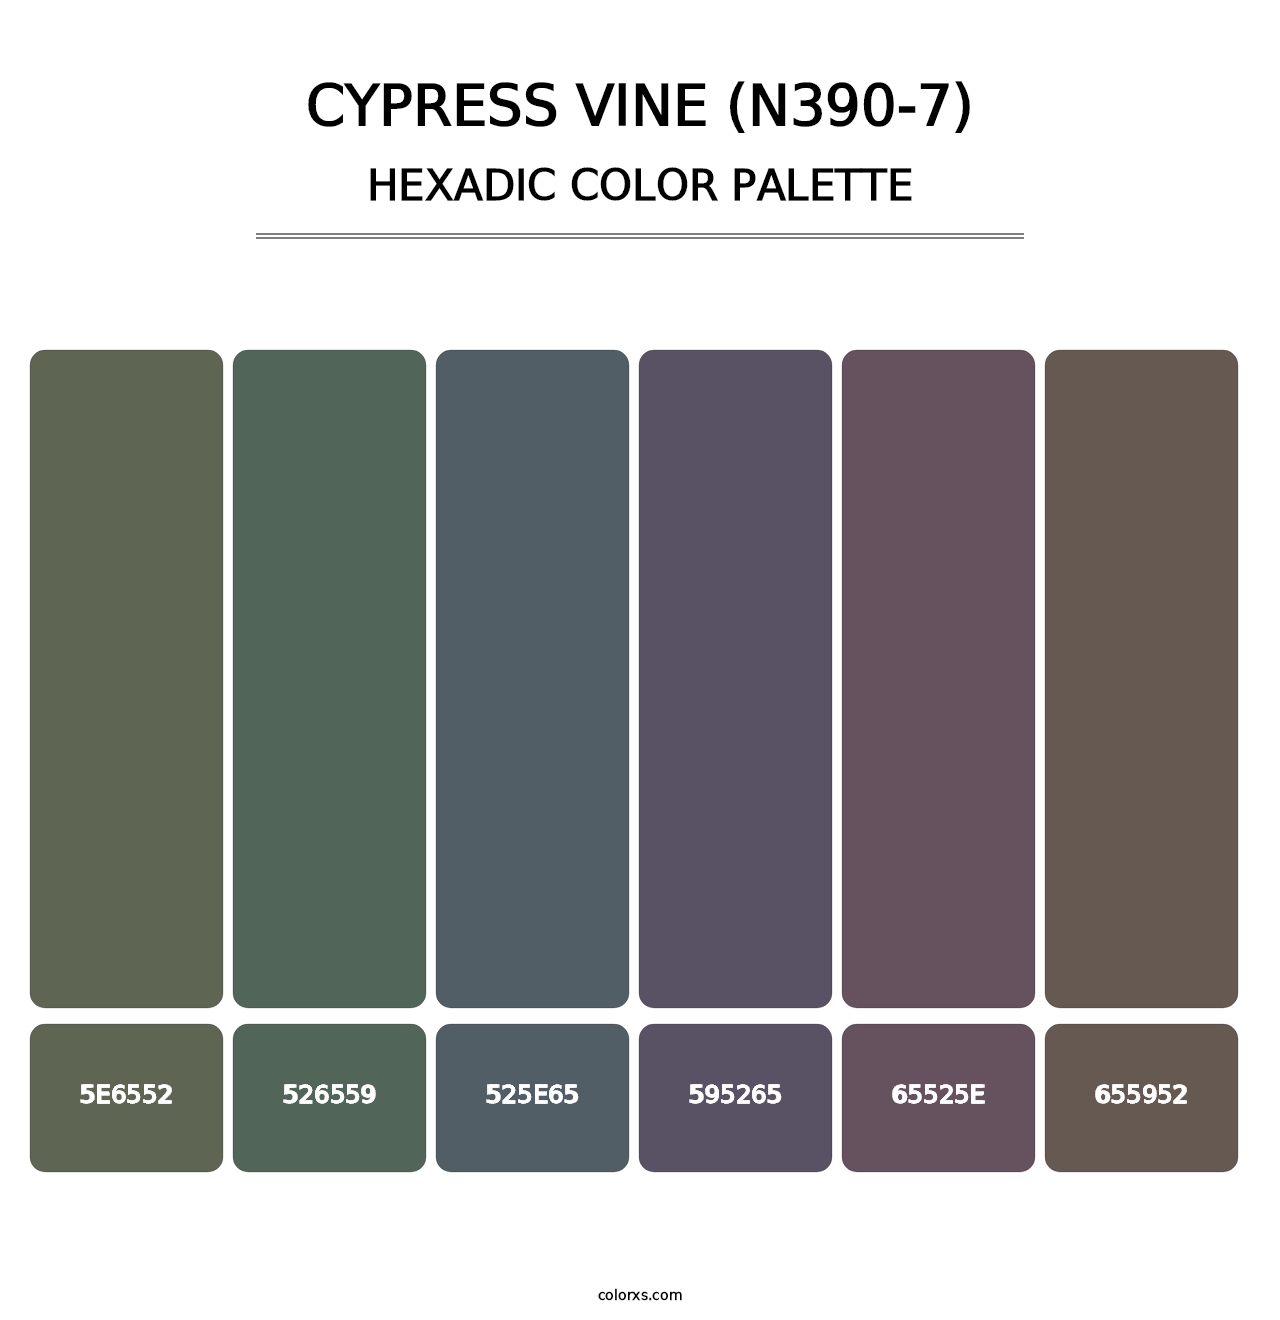 Cypress Vine (N390-7) - Hexadic Color Palette